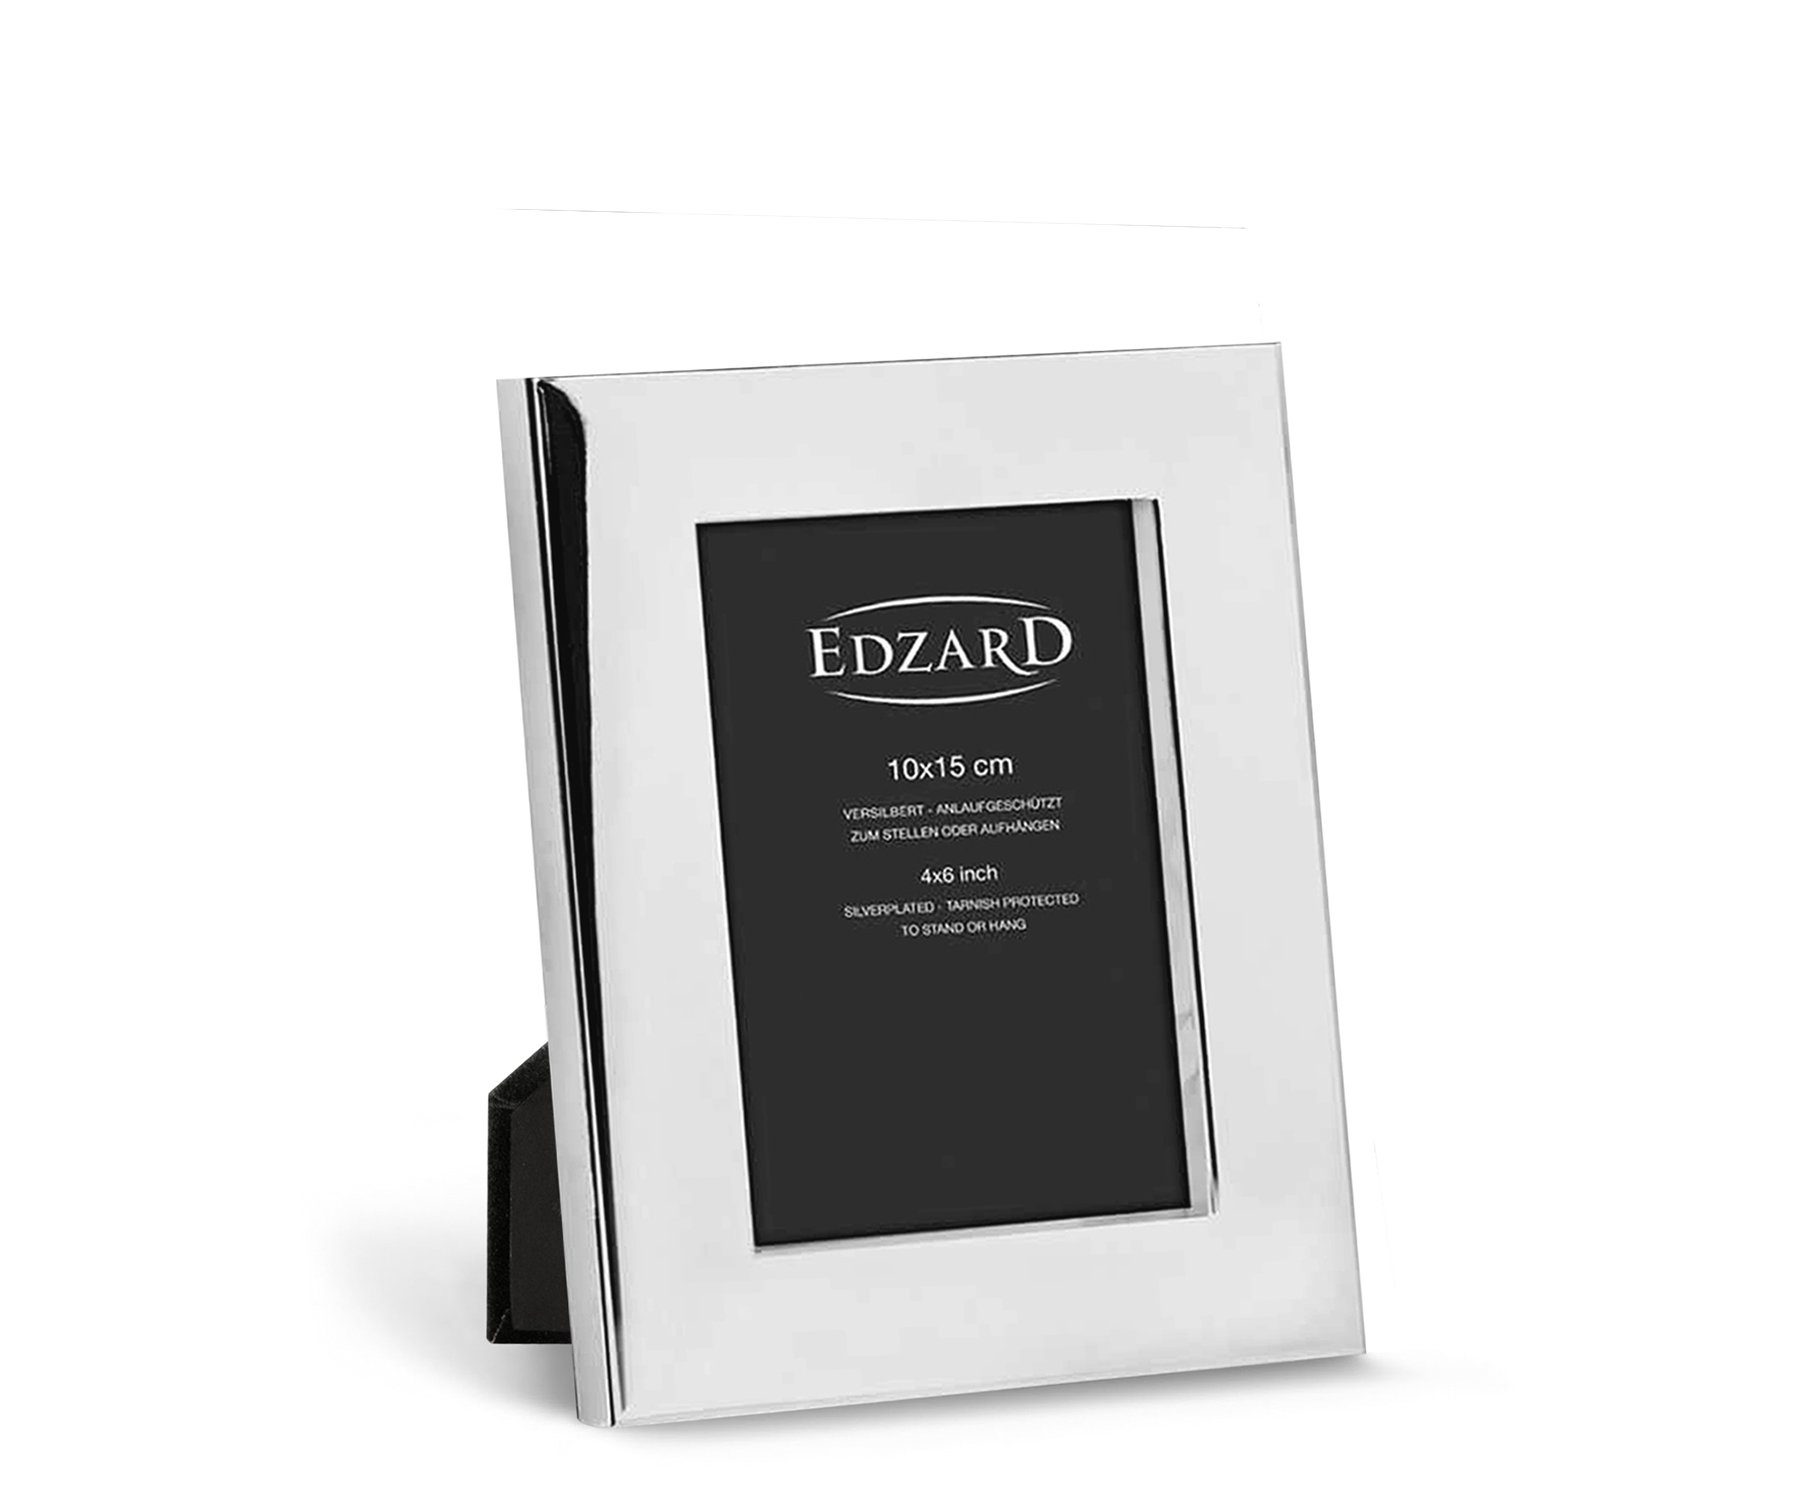 EDZARD Bilderrahmen Udine, versilbert und anlaufgeschützt, für 10x15 cm Foto